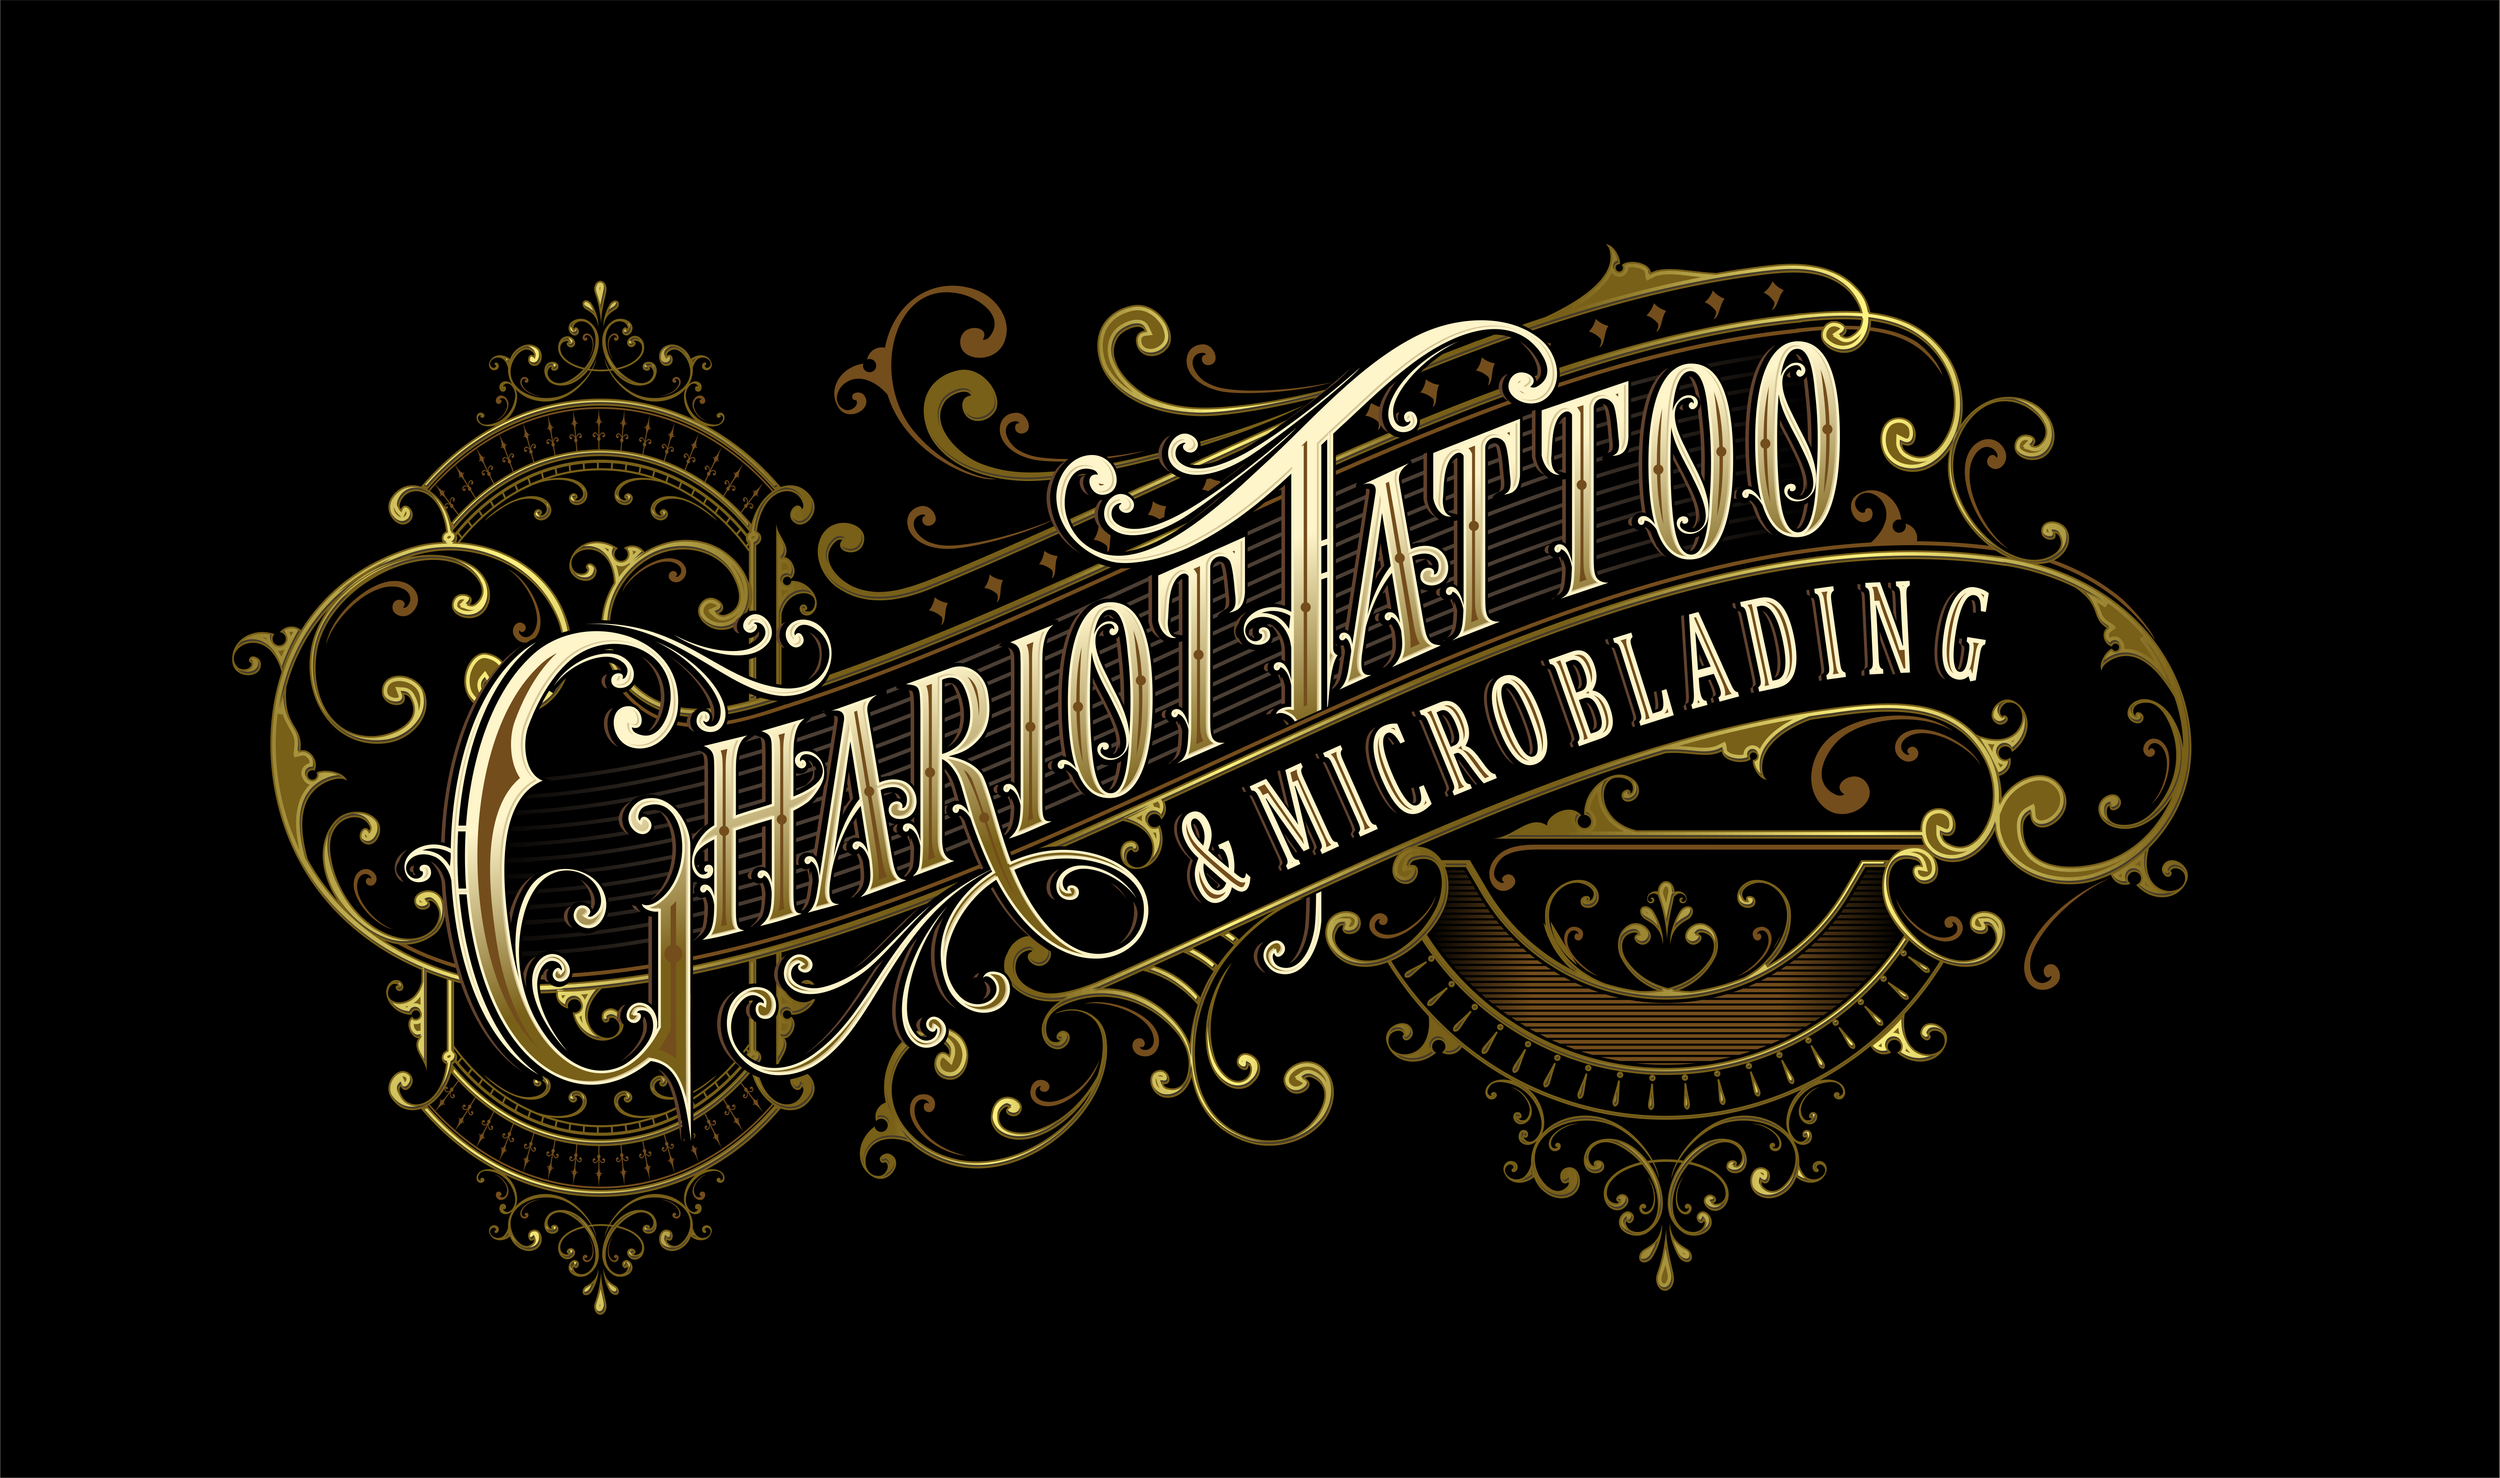 Black Chariot Tattoo  Binghamton NY